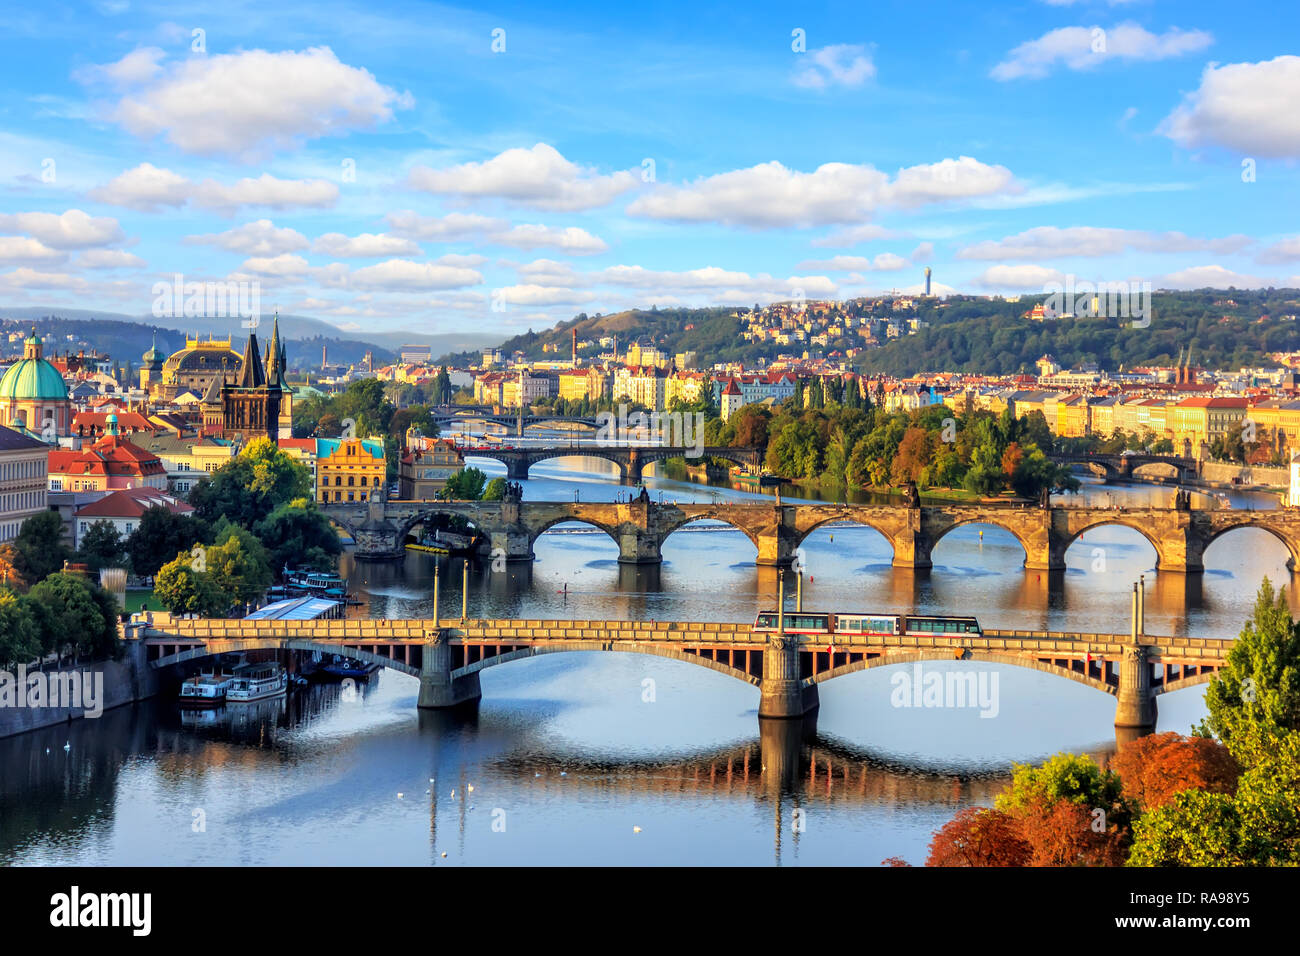 Le pont Charles de Prague et d'autres ponts au-dessus de la rivière Vltava, b Banque D'Images